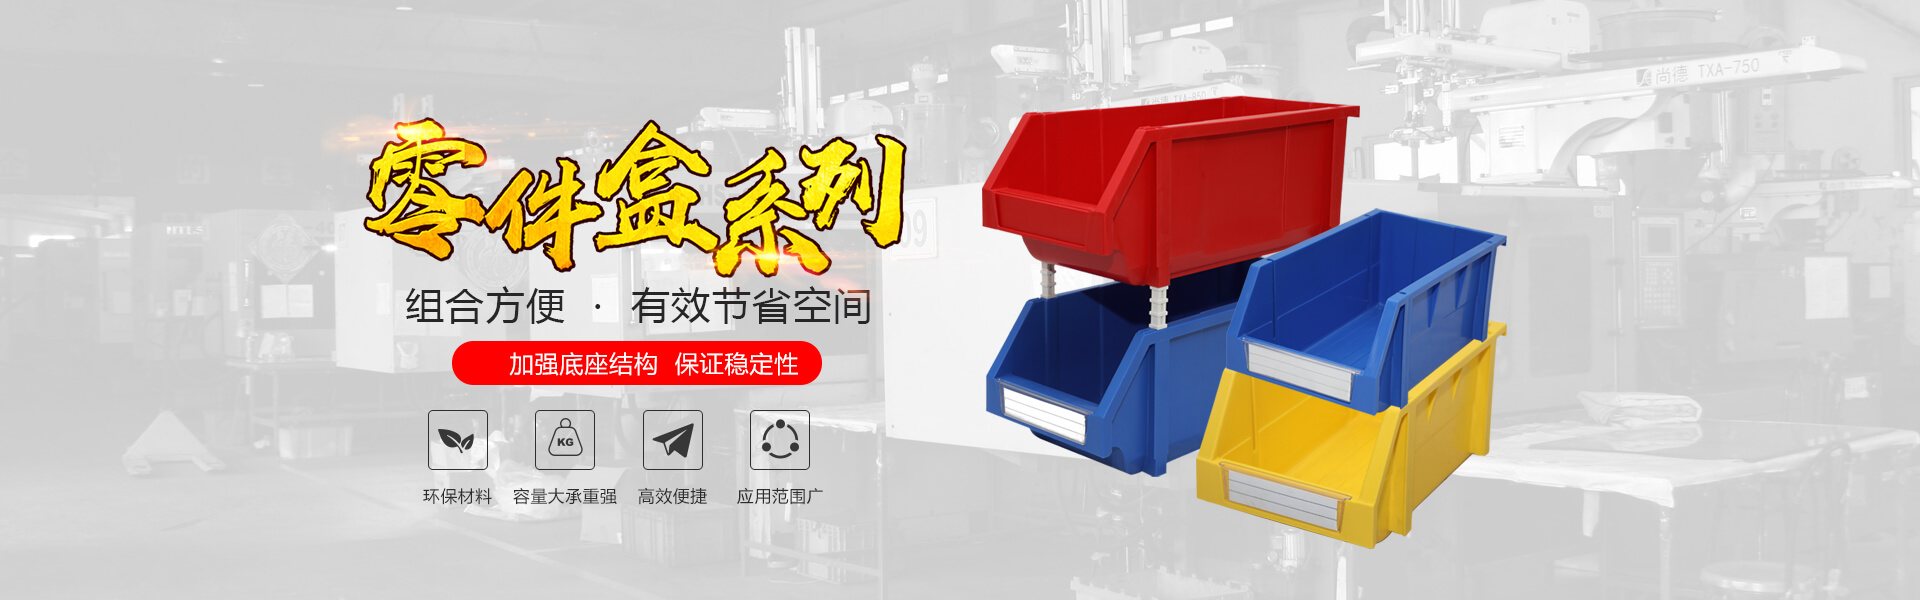 青島若賢自動化主營零件盒,塑料零件盒,塑料托盤等產品!